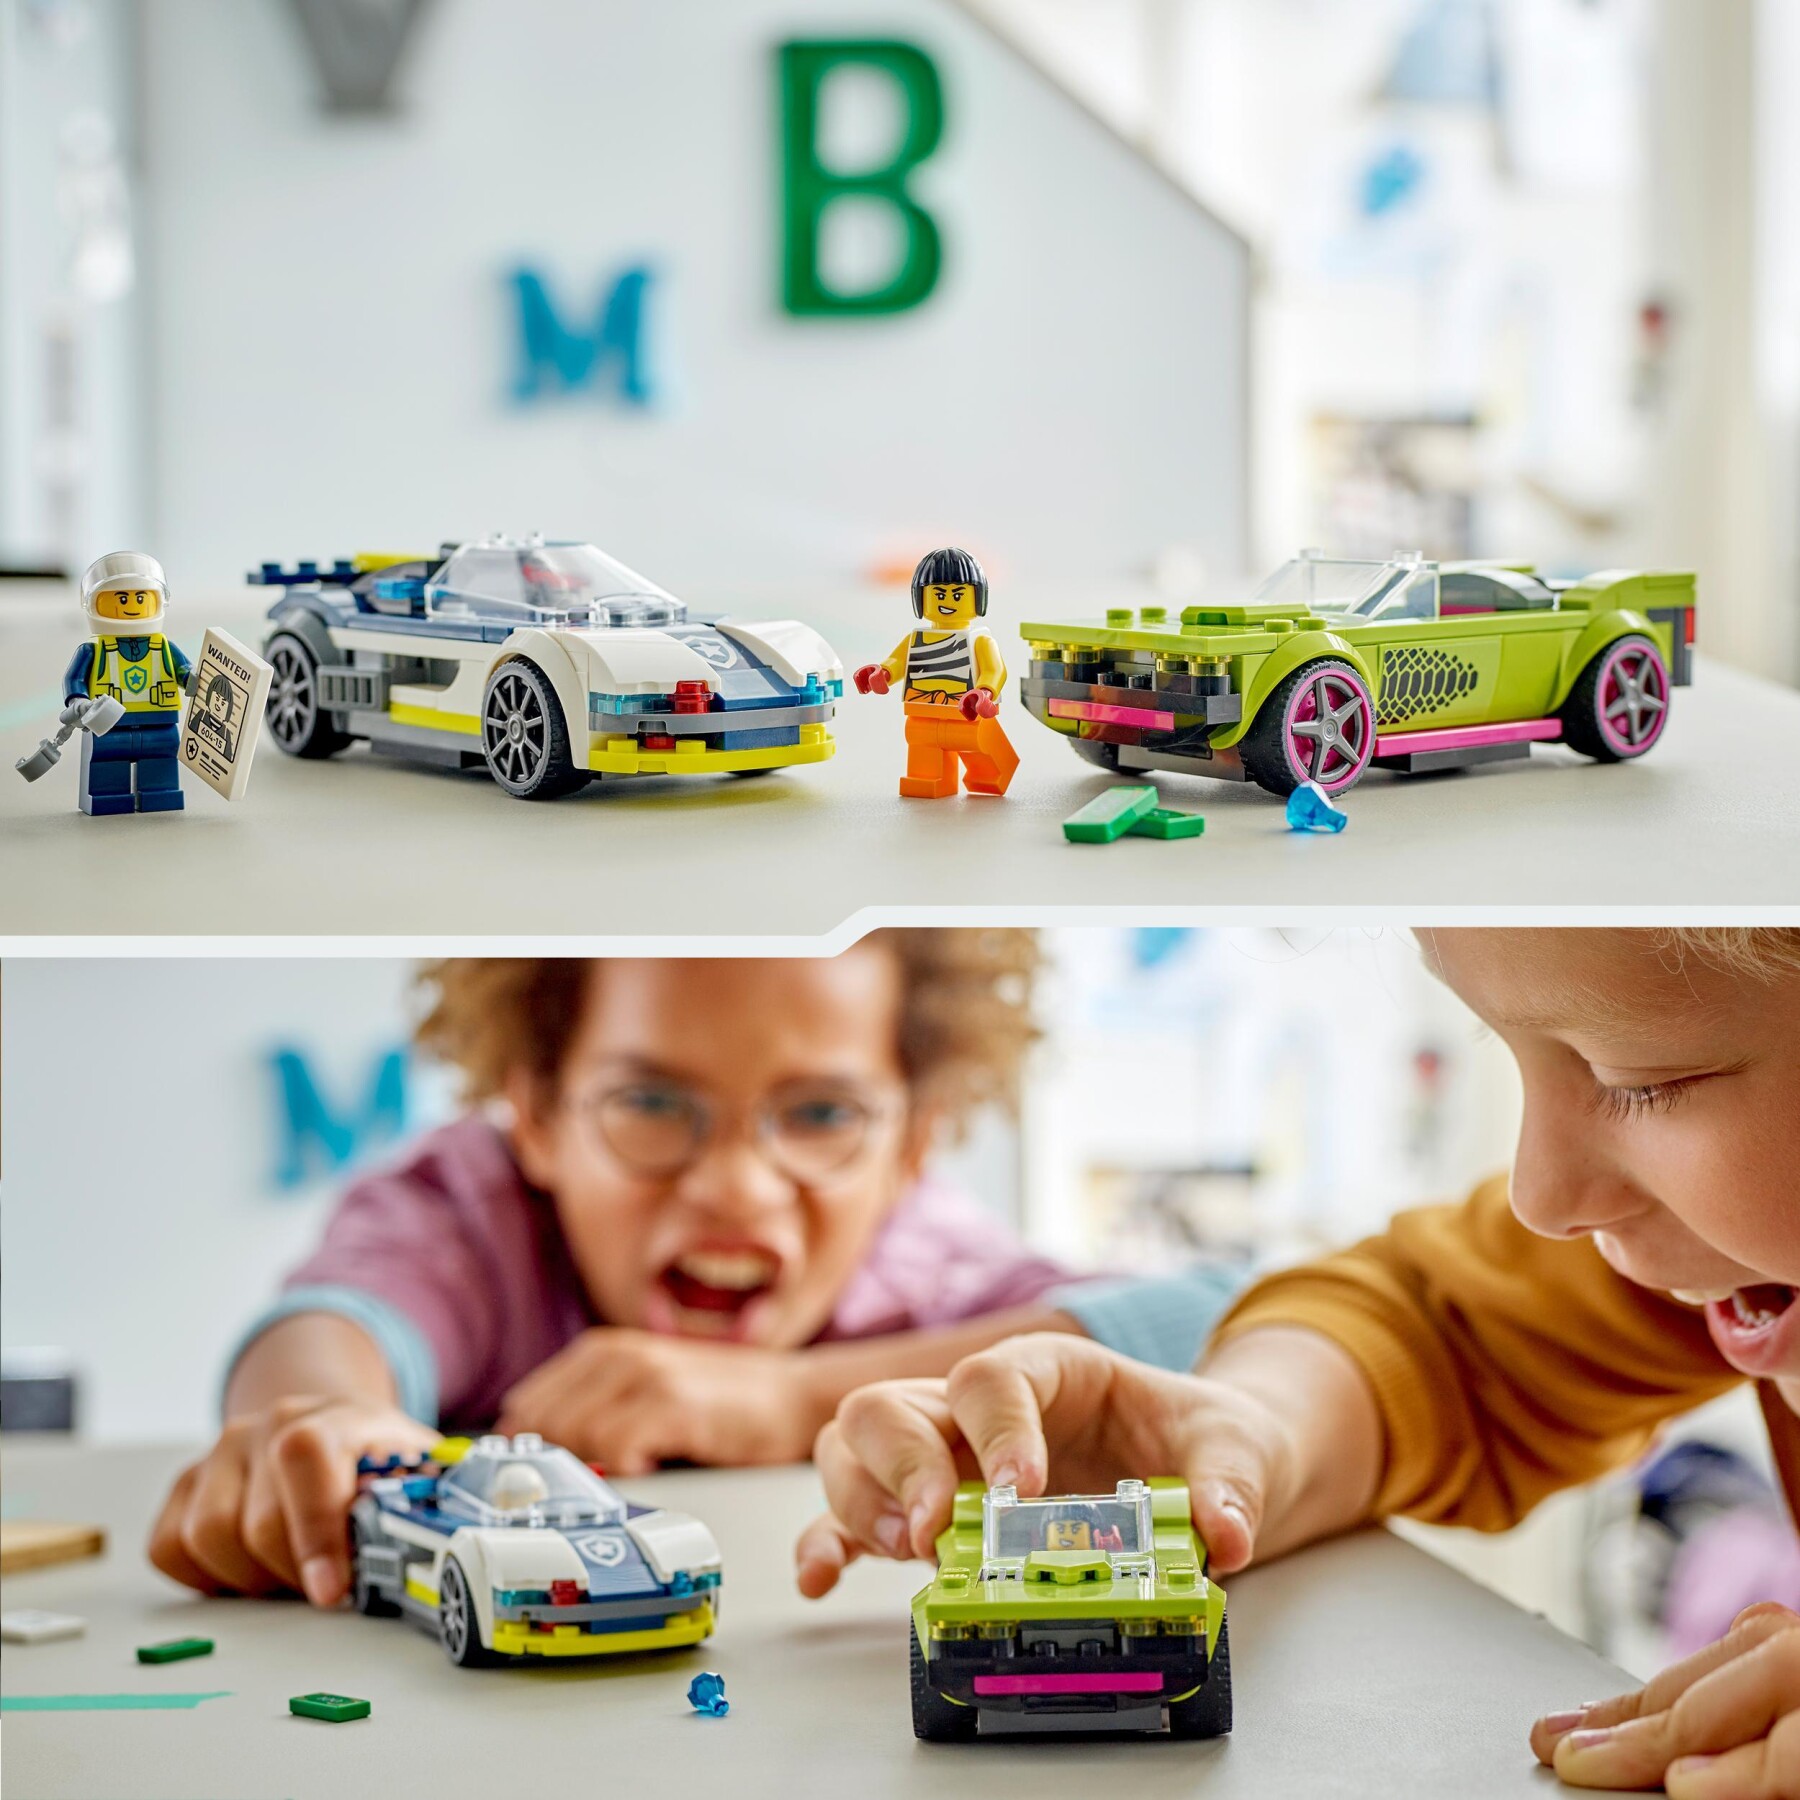 Lego city 60415 inseguimento della macchina da corsa, 2 modellini di auto della polizia, giocattolo per bambini di 6+ anni - LEGO CITY